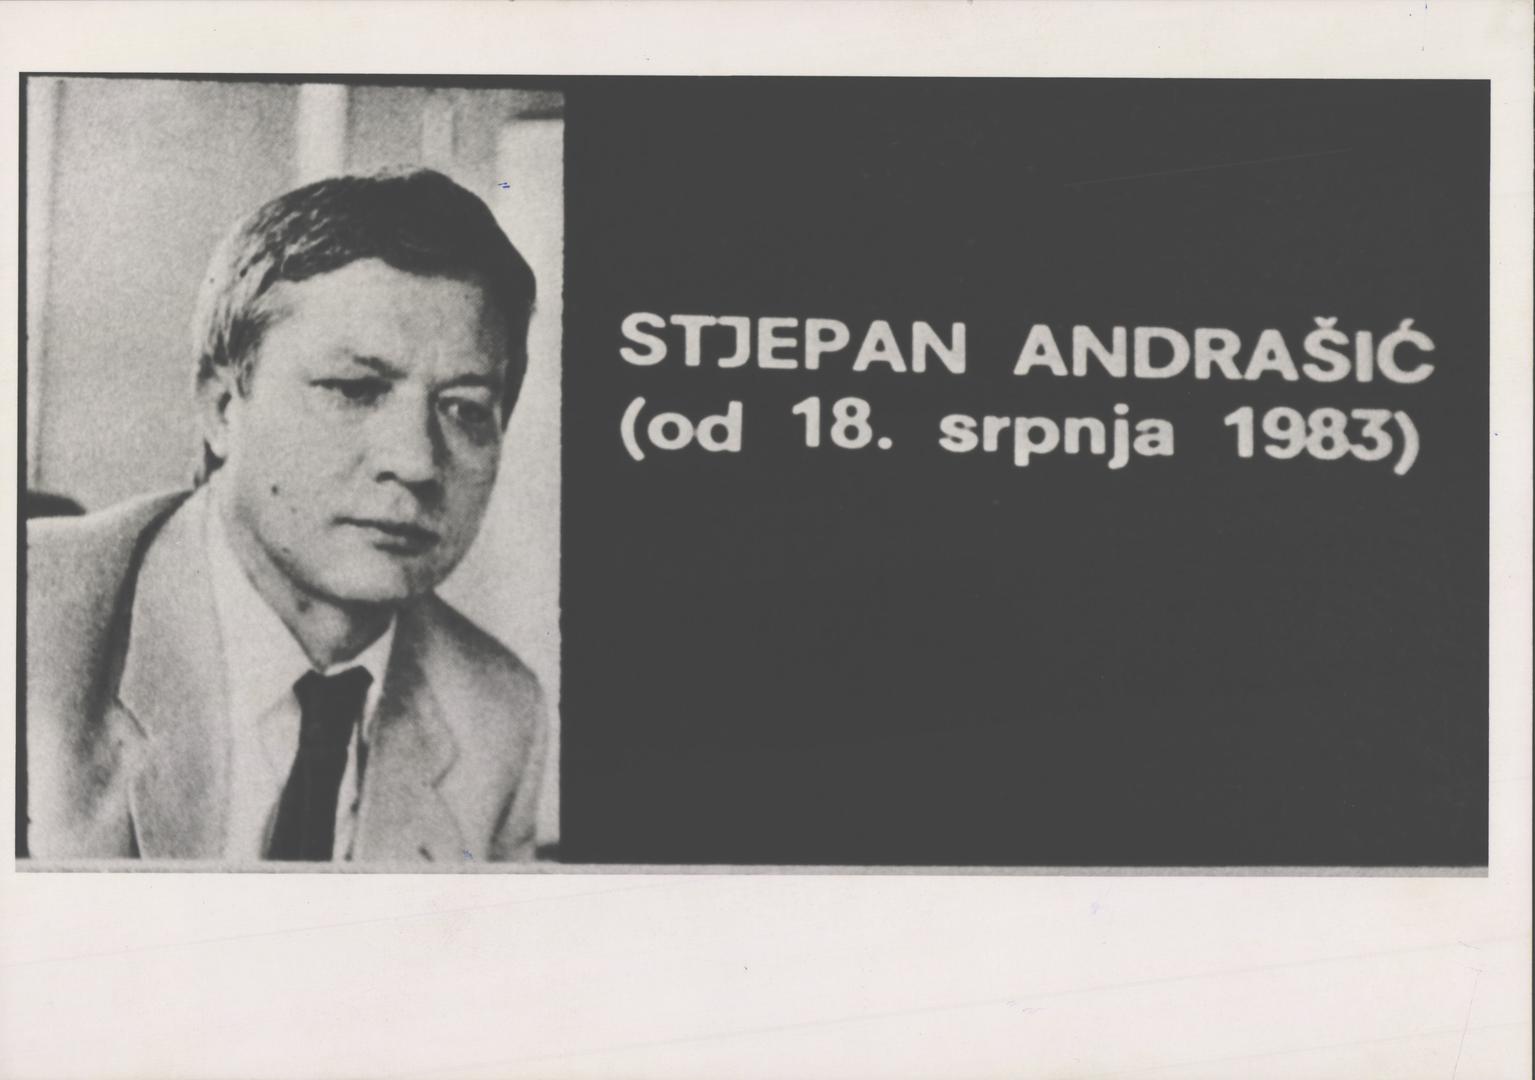 Godišnju nagradu zaslužio je i dugogodišnji novinar i urednik, tada i glavni urednik Večernjeg lista Stjepan Andrašić